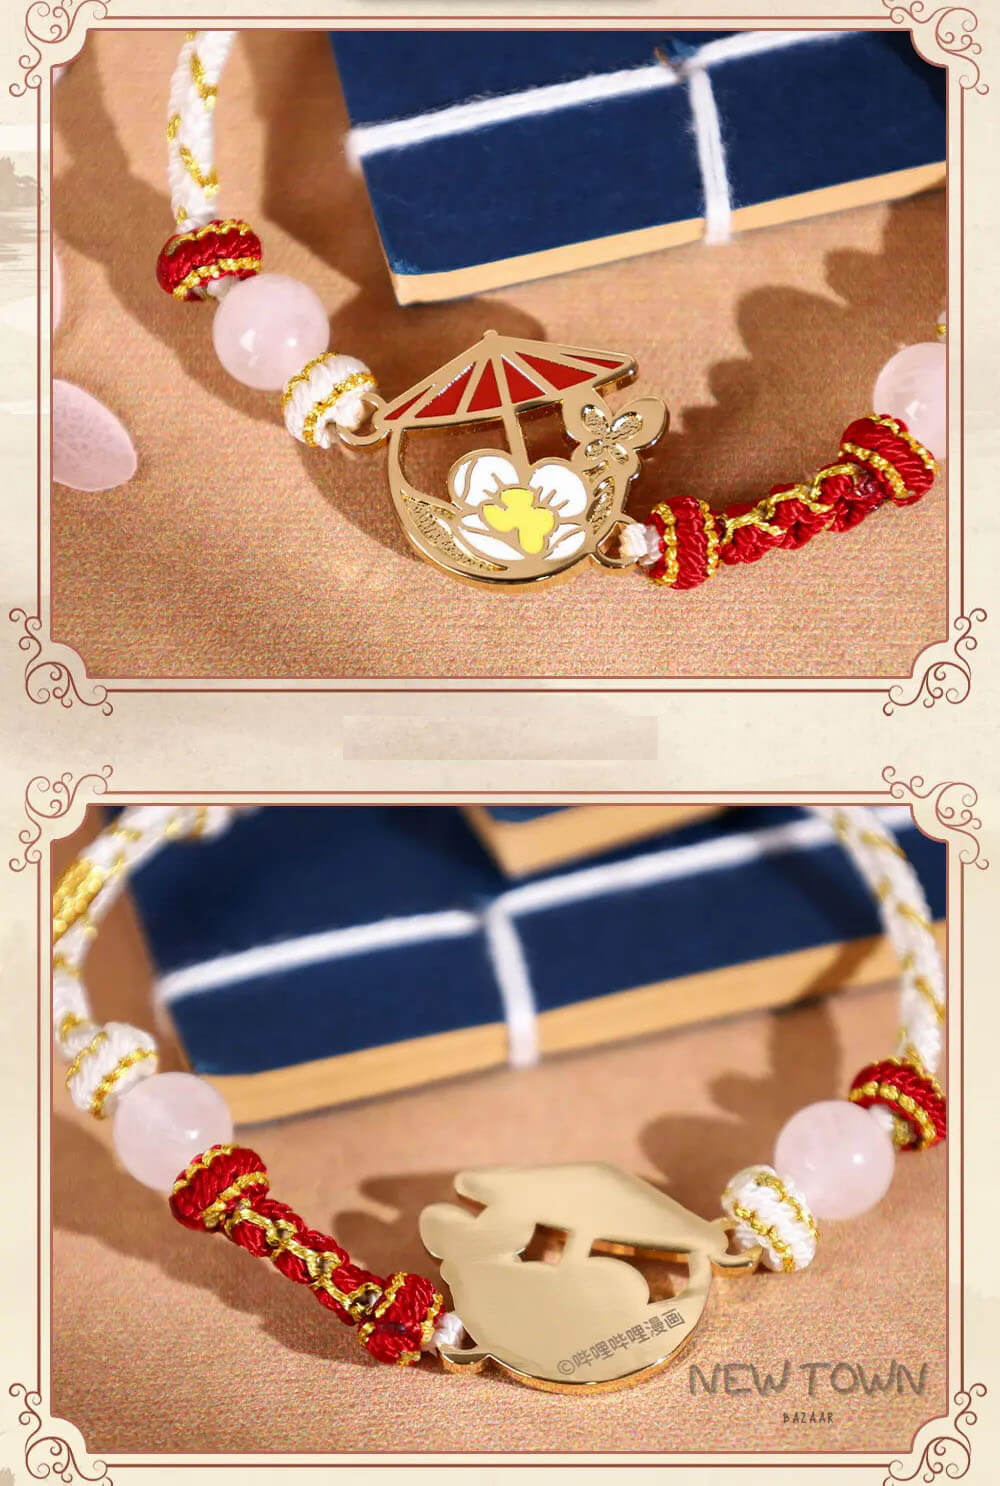 Bracelet inspiré du manga Heaven Official's Blessing